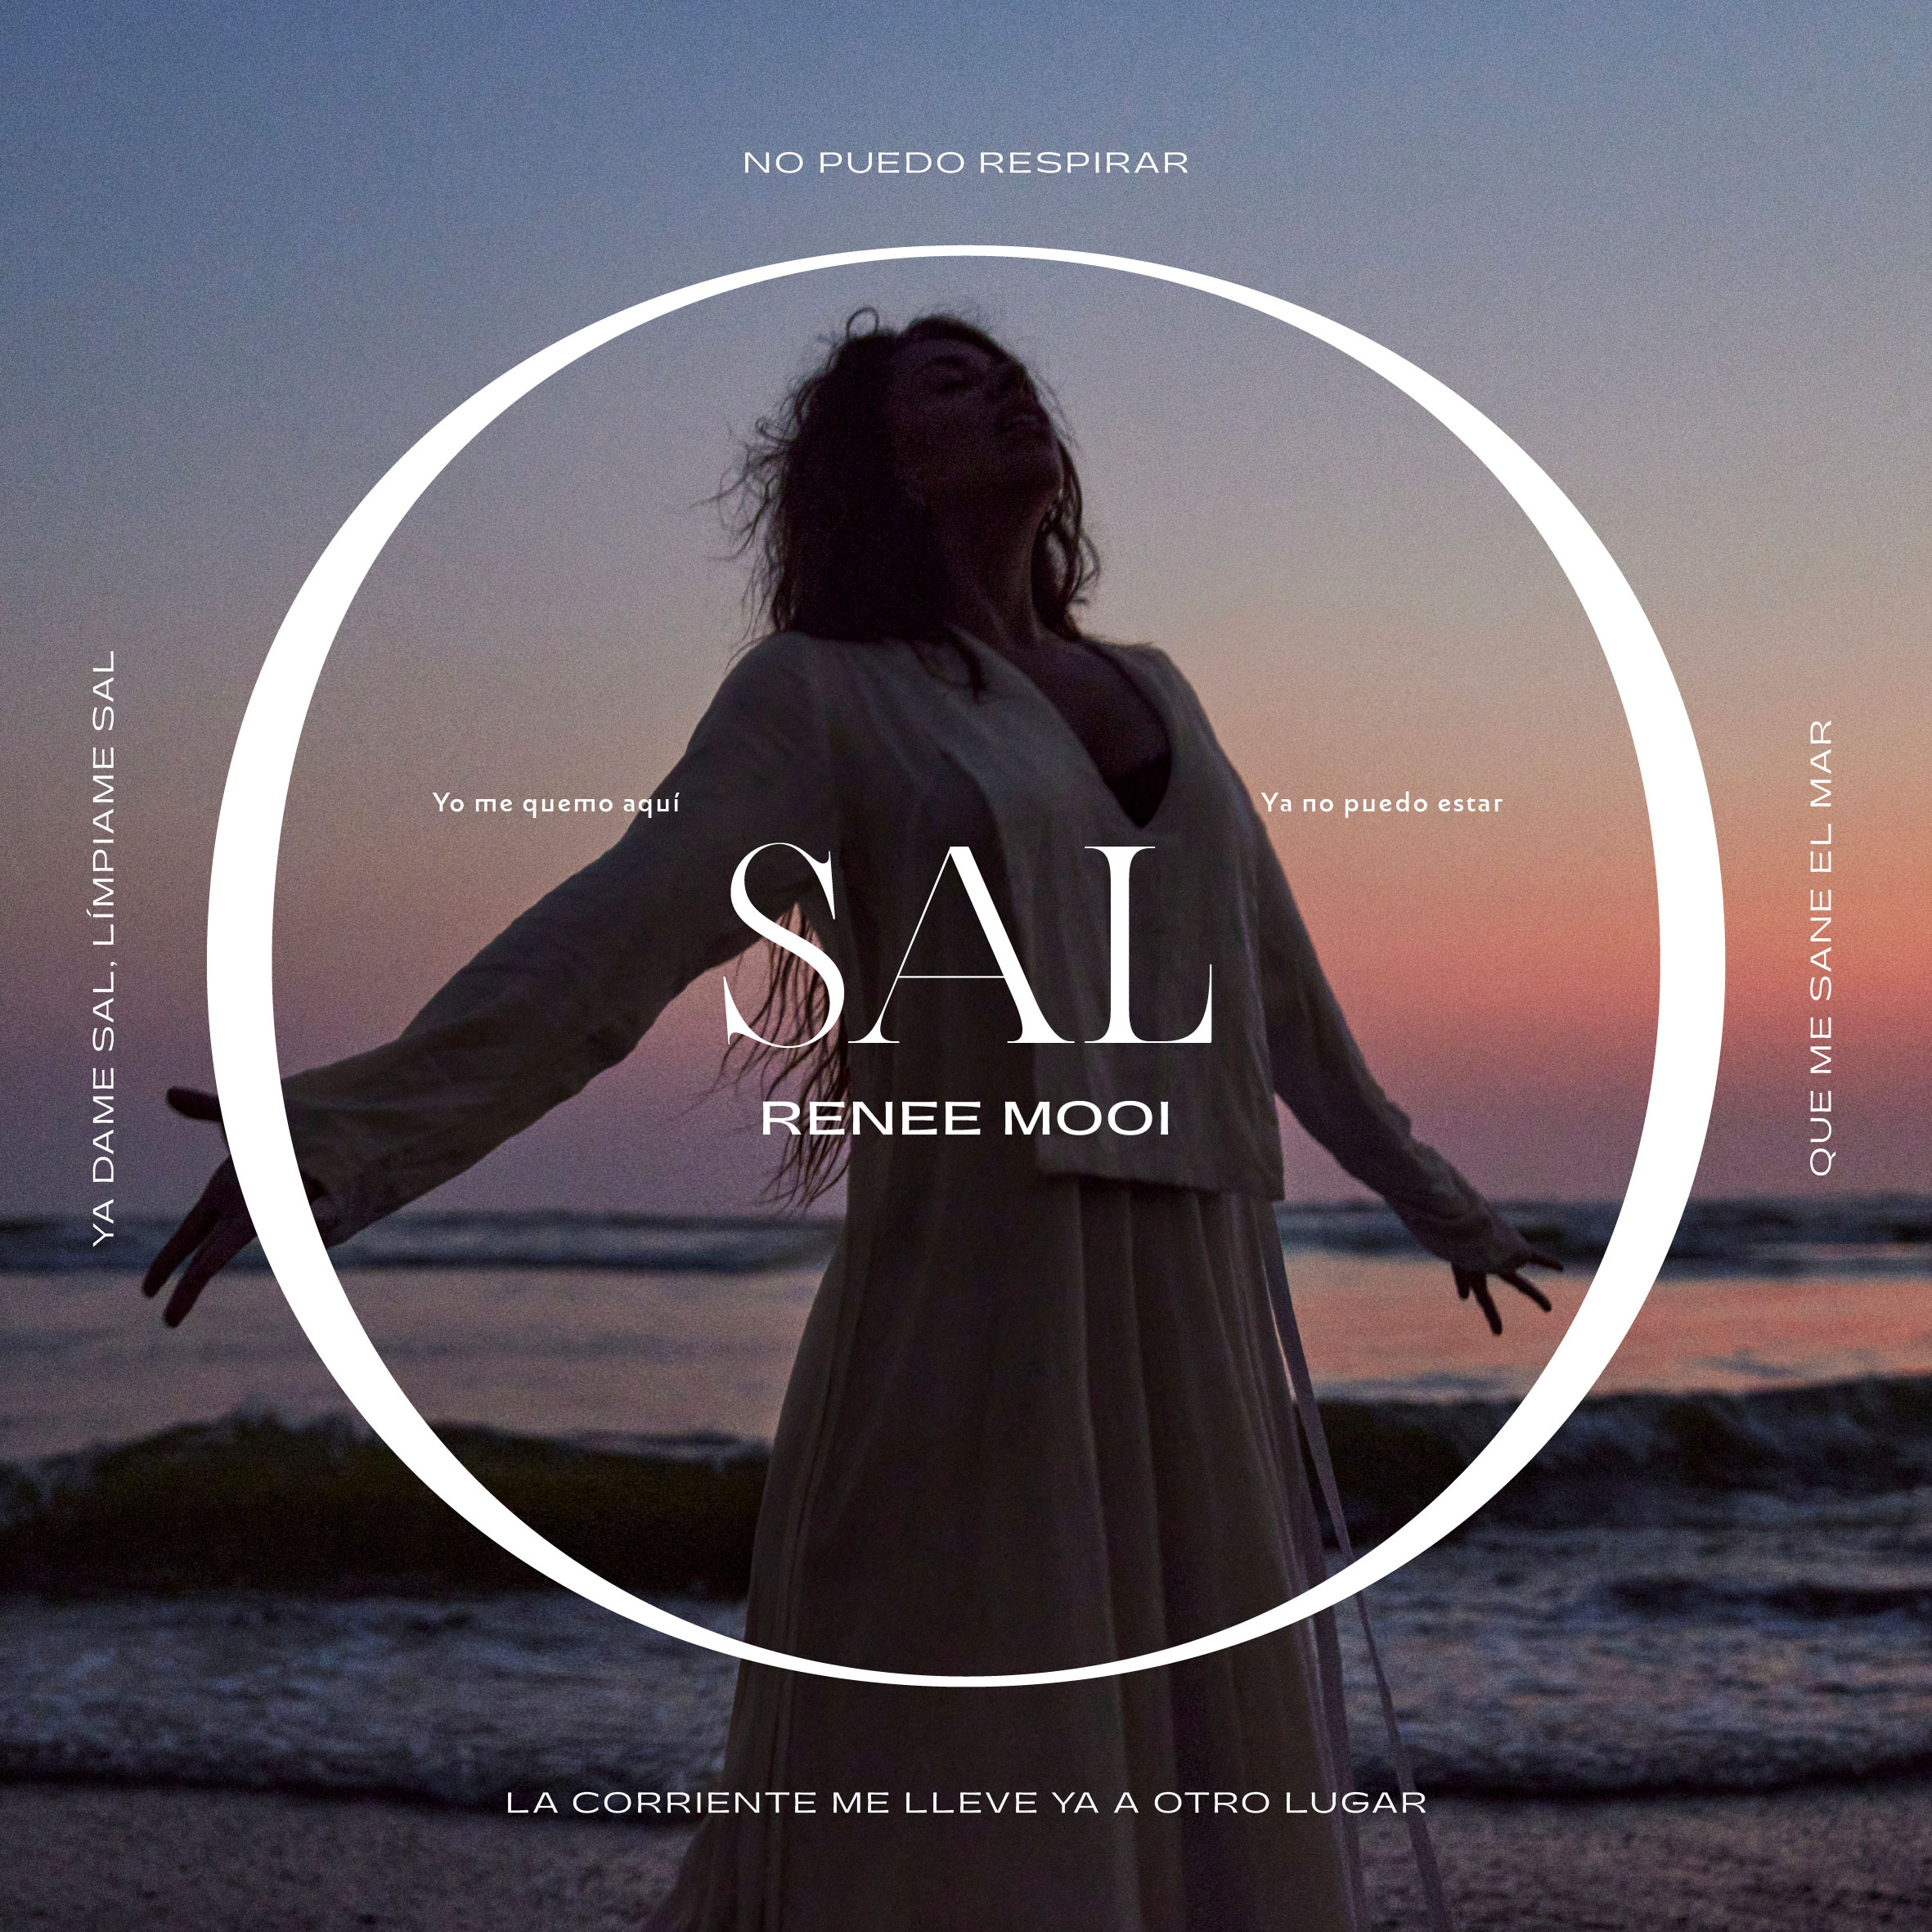  “SAL” de Renee Mooi: Un Canto de Resiliencia y Renovación